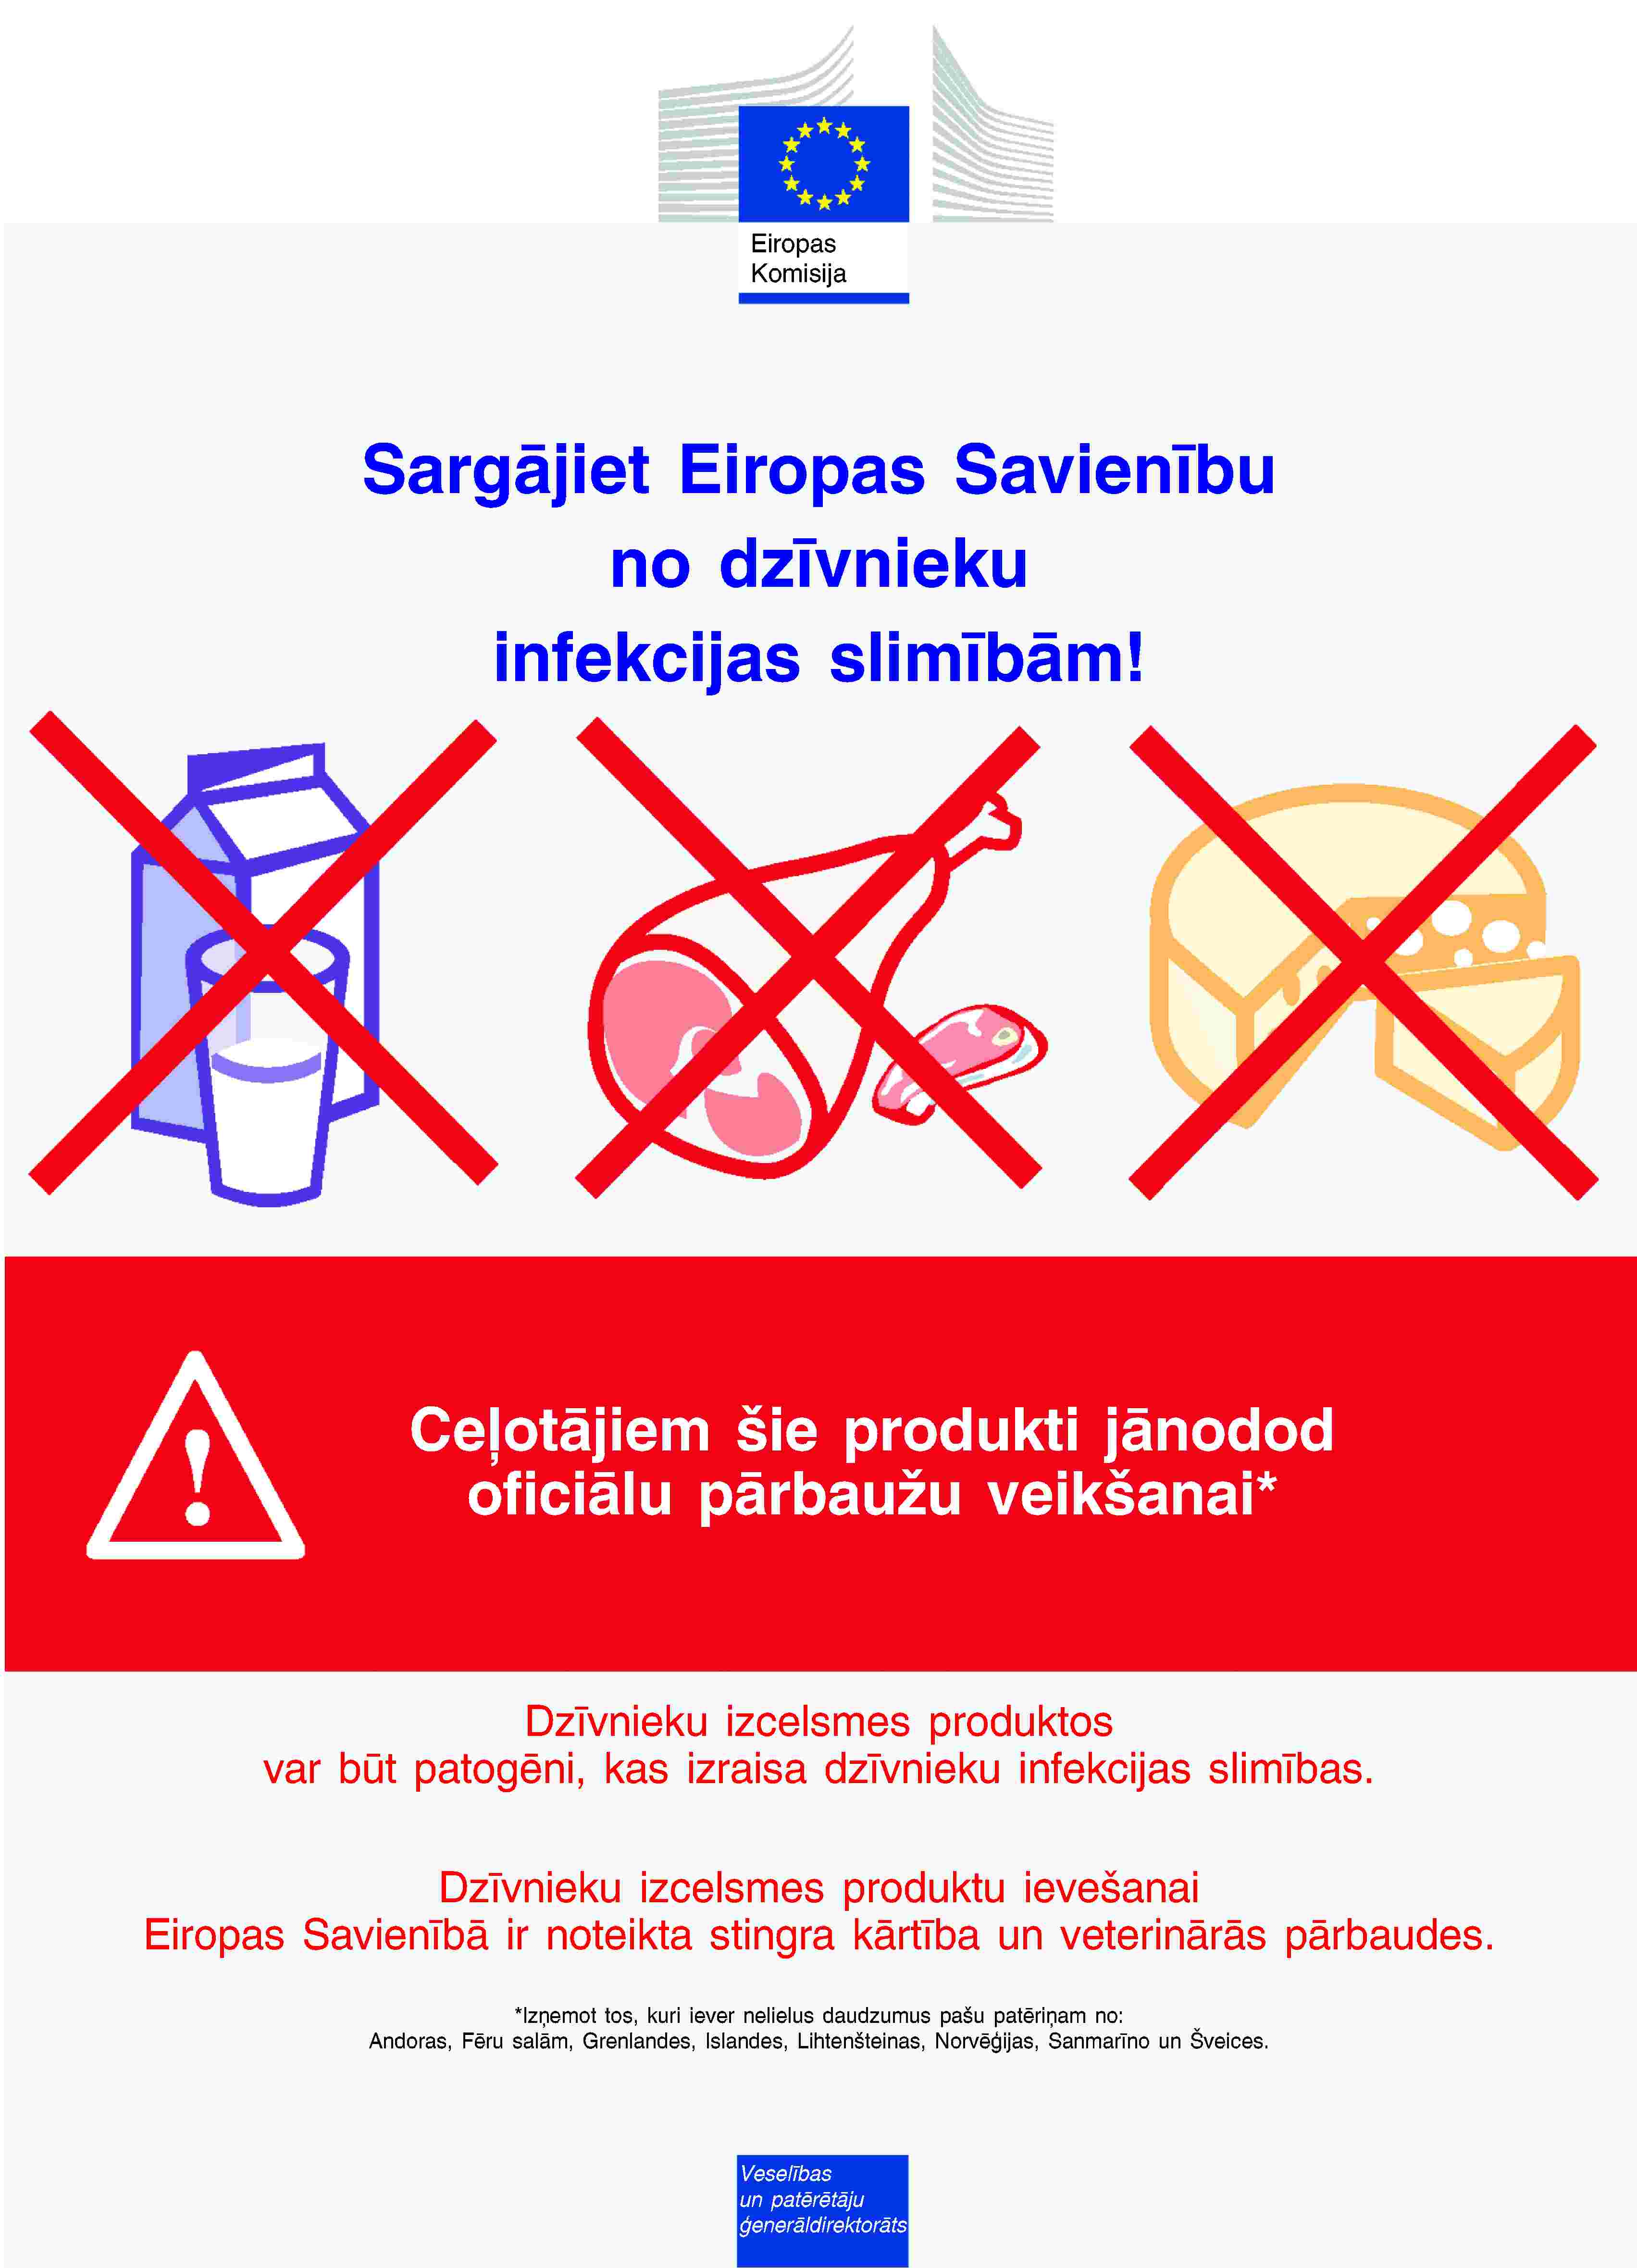 Eiropas KomisijaSargājiet Eiropas Savienību no dzīvnieku infekcijas slimībām!Ceļotājiem šie produkti jānodod oficiālu pārbaužu veikšanai*Dzīvnieku izcelsmes produktos var būt patogēni, kas izraisa dzīvnieku infekcijas slimības.Dzīvnieku izcelsmes produktu ievešanai Eiropas Savienībā ir noteikta stingra kārtība un veterinārās pārbaudes.*Izņemot tos, kuri iever nelielus daudzumus pašu patēriņam no:Andoras, Fēru salām, Grenlandes, Islandes, Lihtenšteinas, Norvēģijas, Sanmarīno un Šveices.Veselības un patērētāju ģenerāldirektorāts